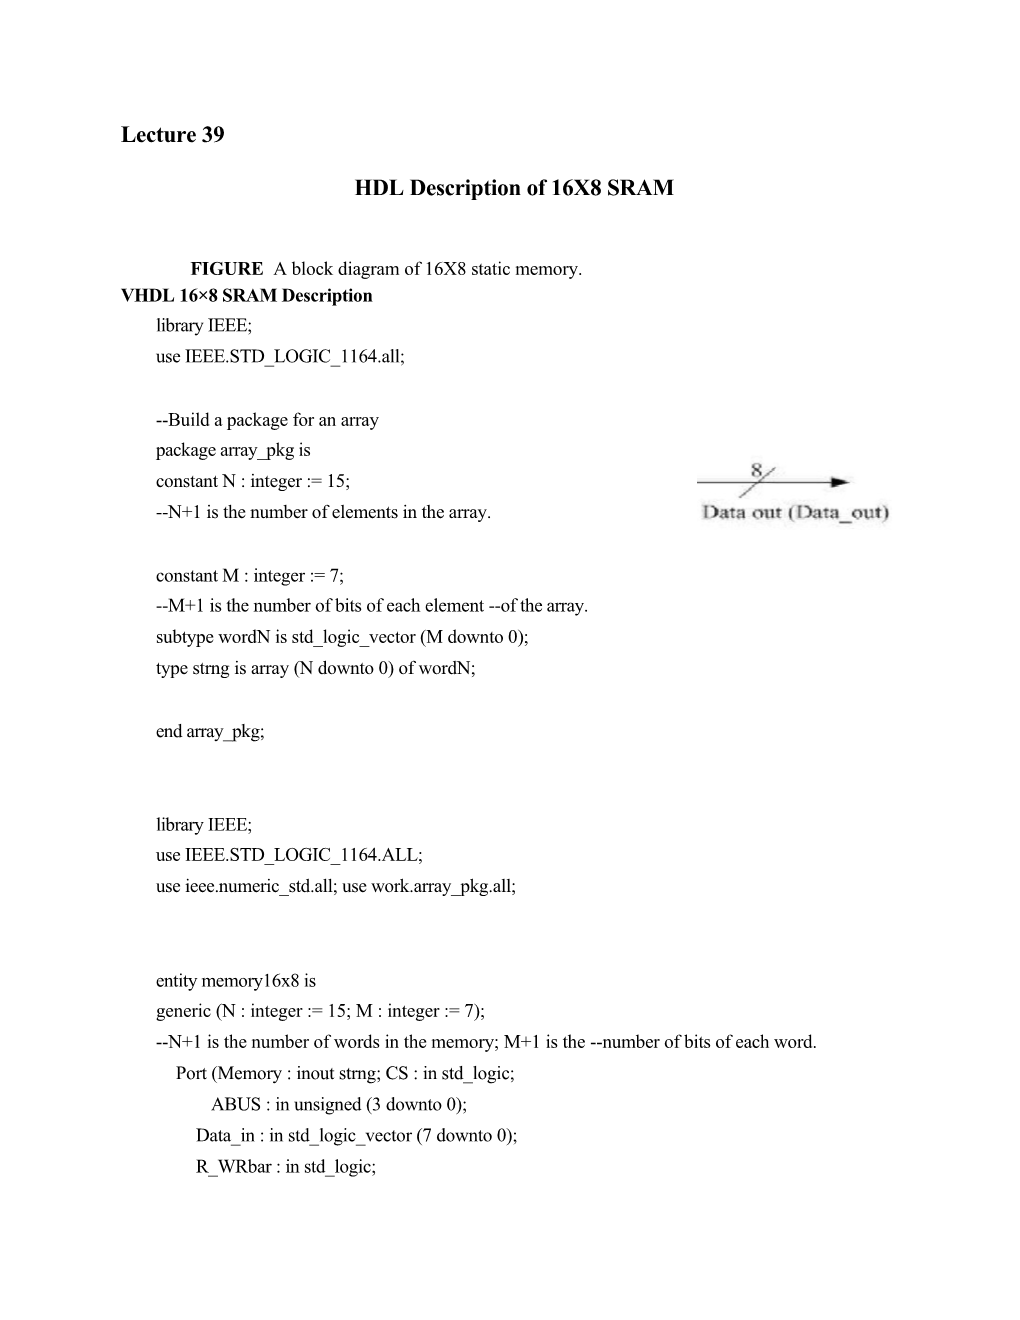 HDL Description of 16X8 SRAM